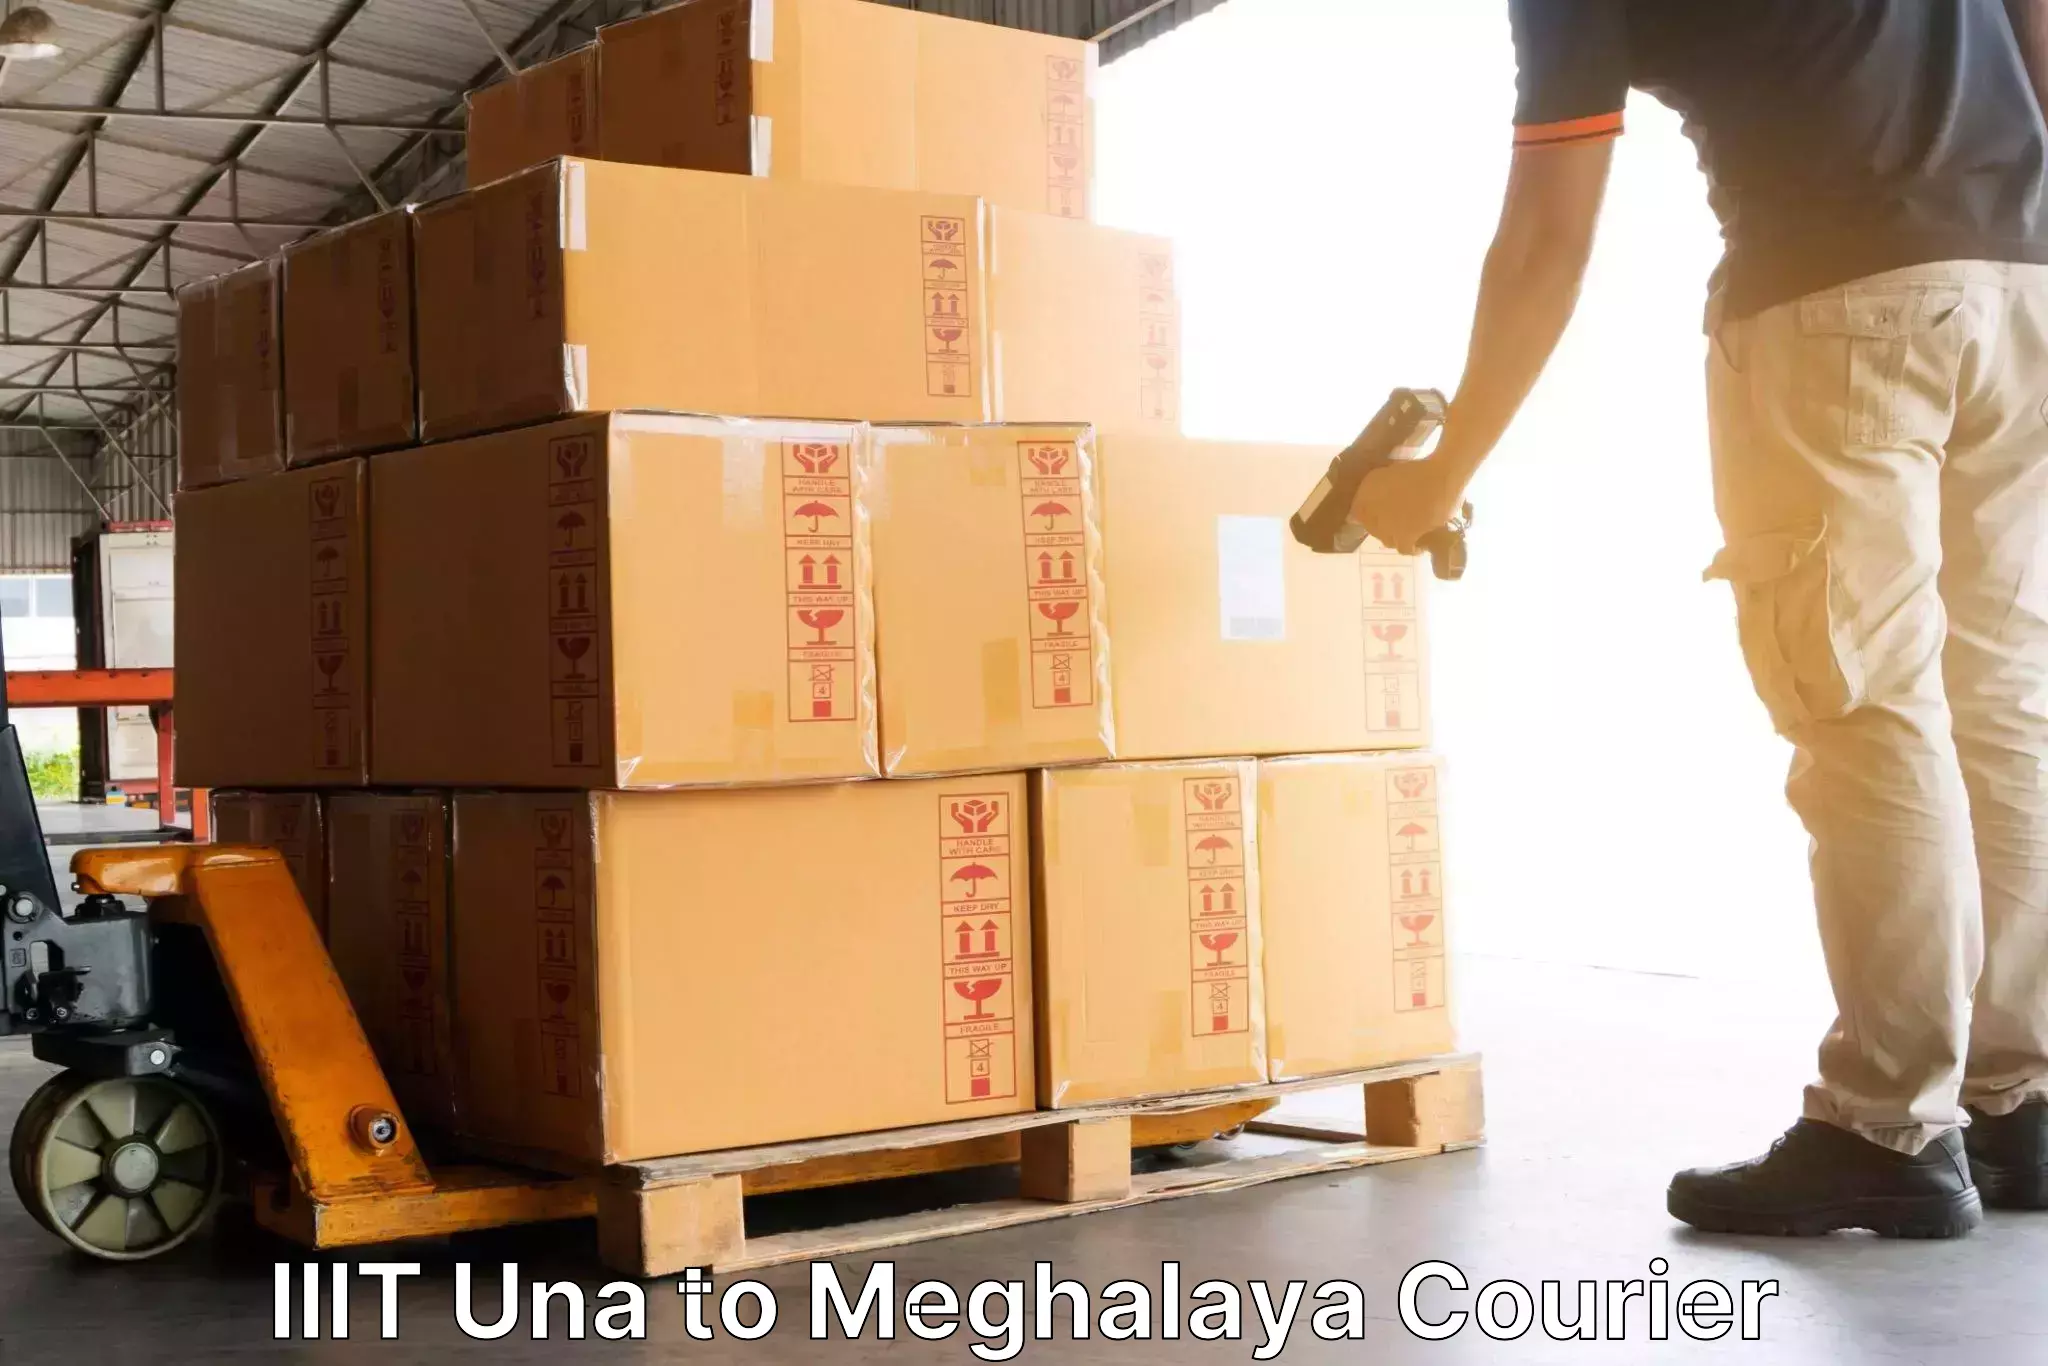 Courier membership IIIT Una to Meghalaya